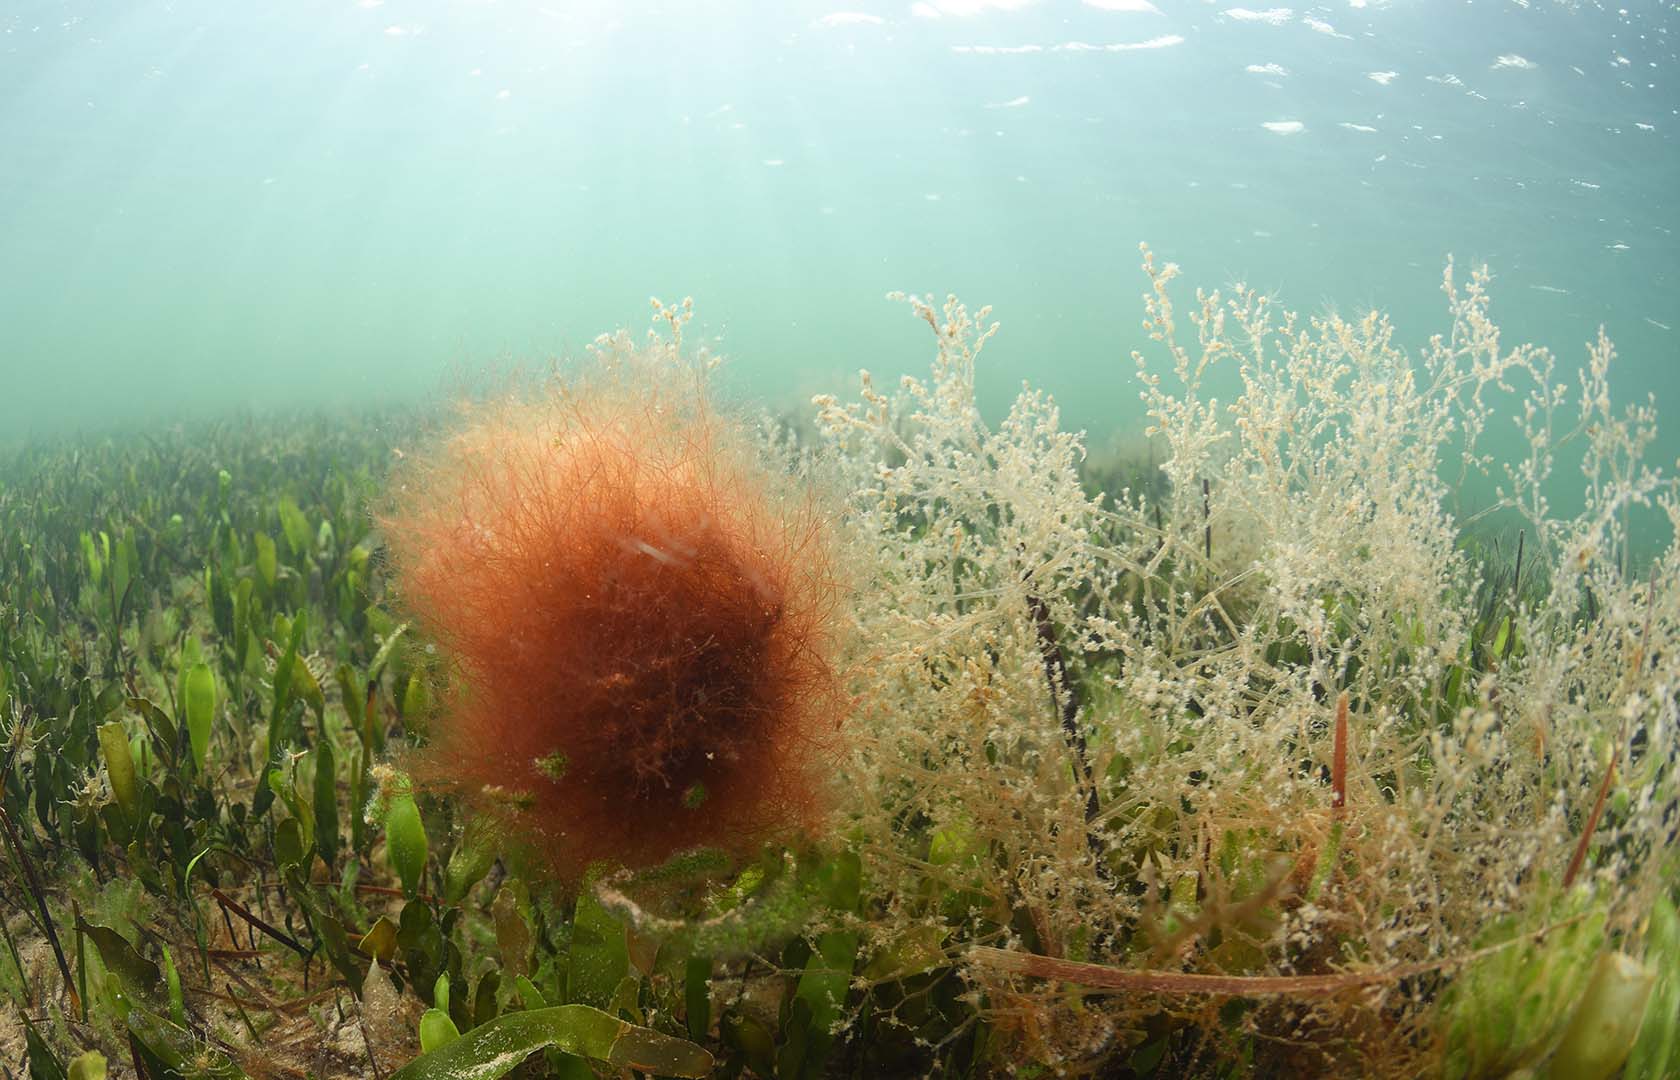 La especie puede confundirse fácilmente en el campo con otras especies de algas filamentosas rojas.